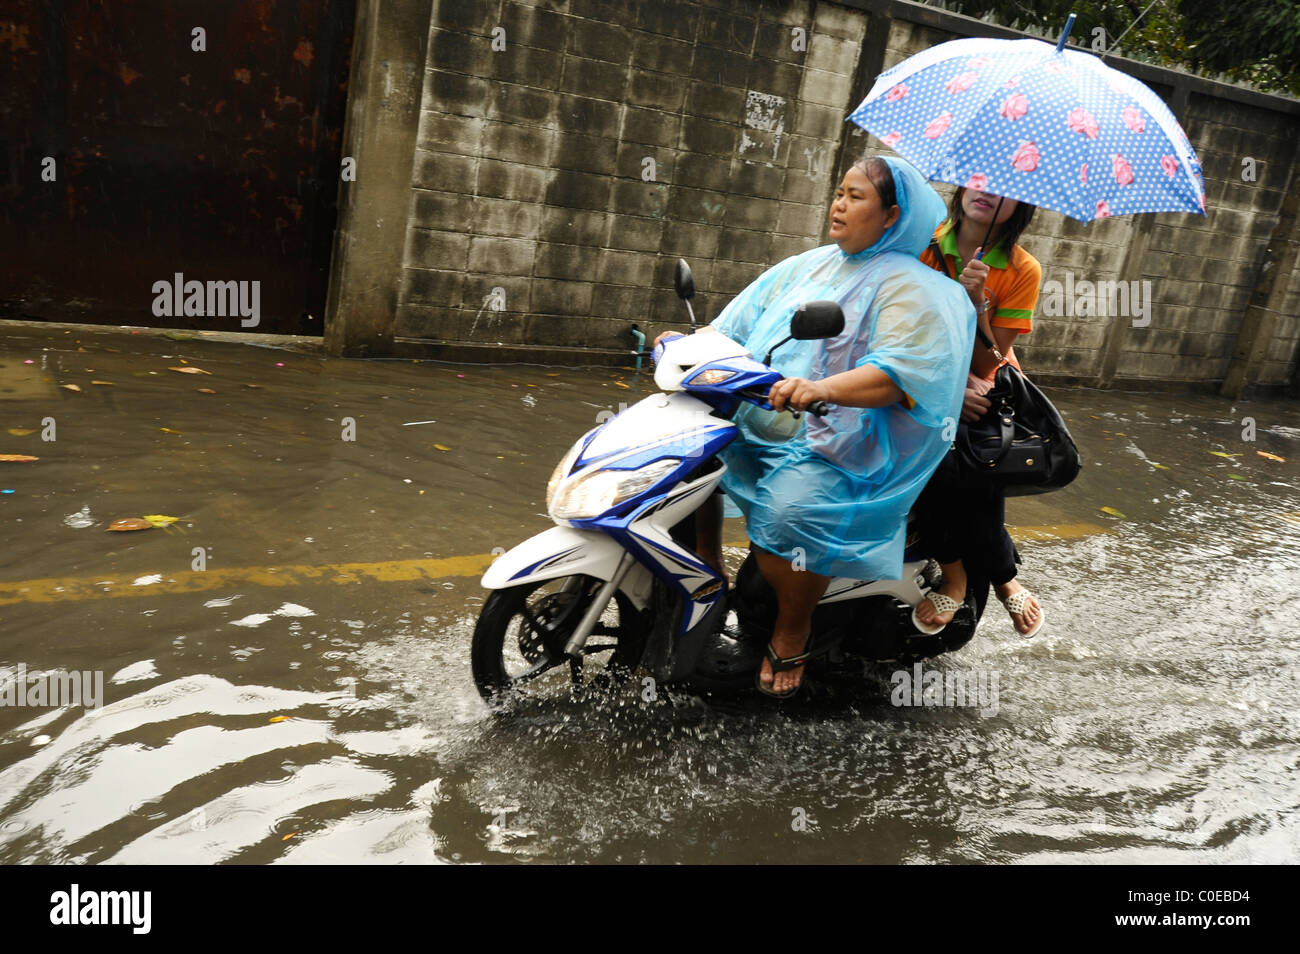 Un jour de pluie à Bangkok ( rue inondée fou), la vie quotidienne dans le grand mango, étrange situation météo Banque D'Images